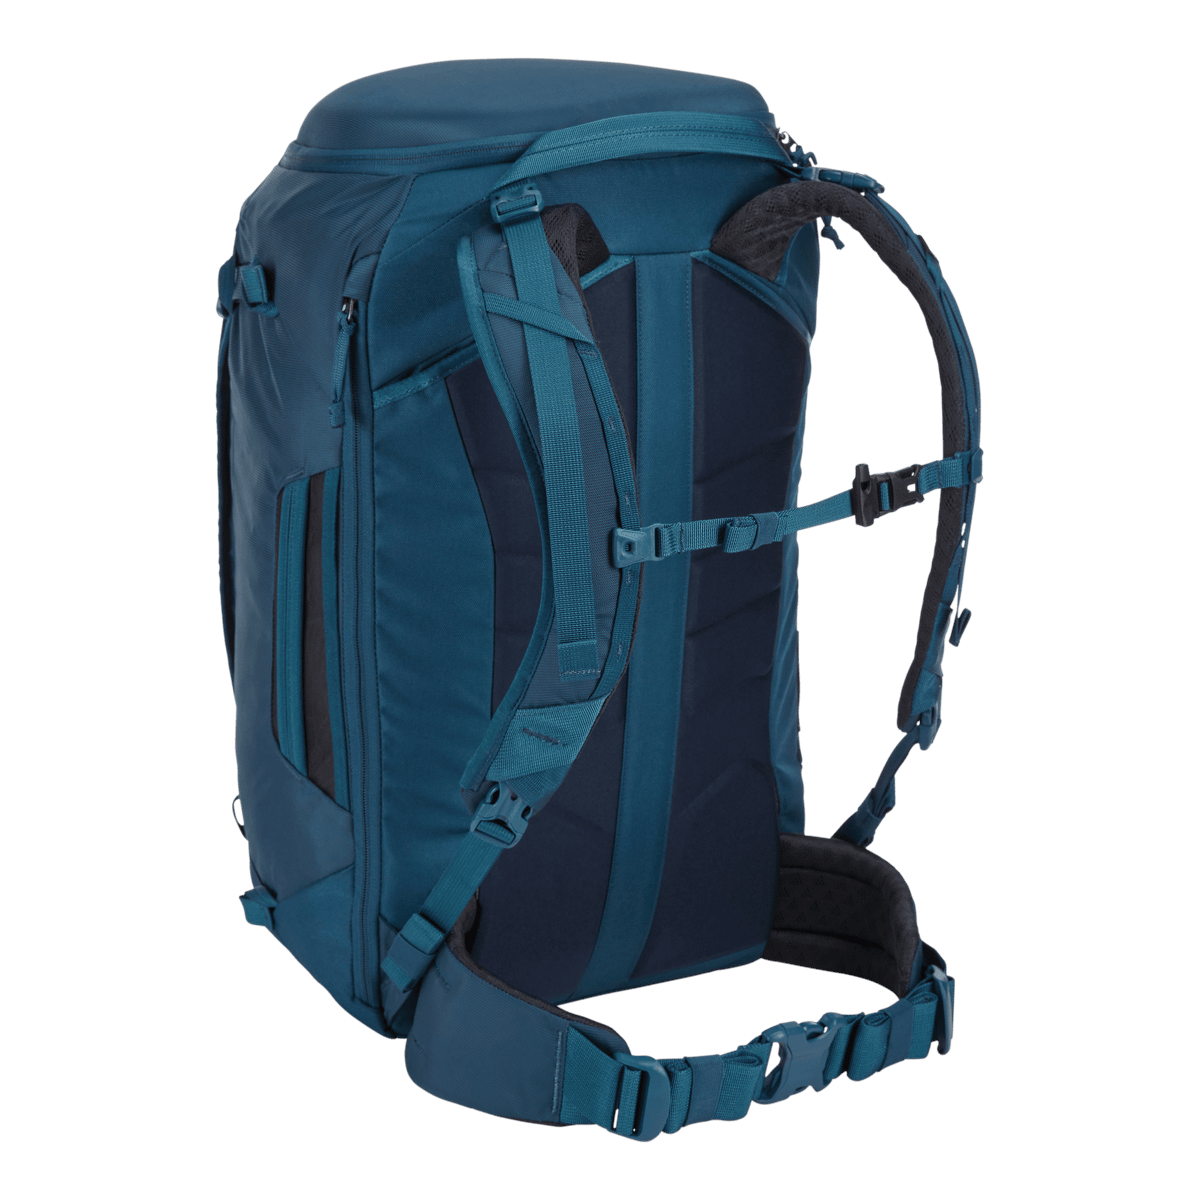 Thule Landmark 40L women's backpacking pack majolica blue